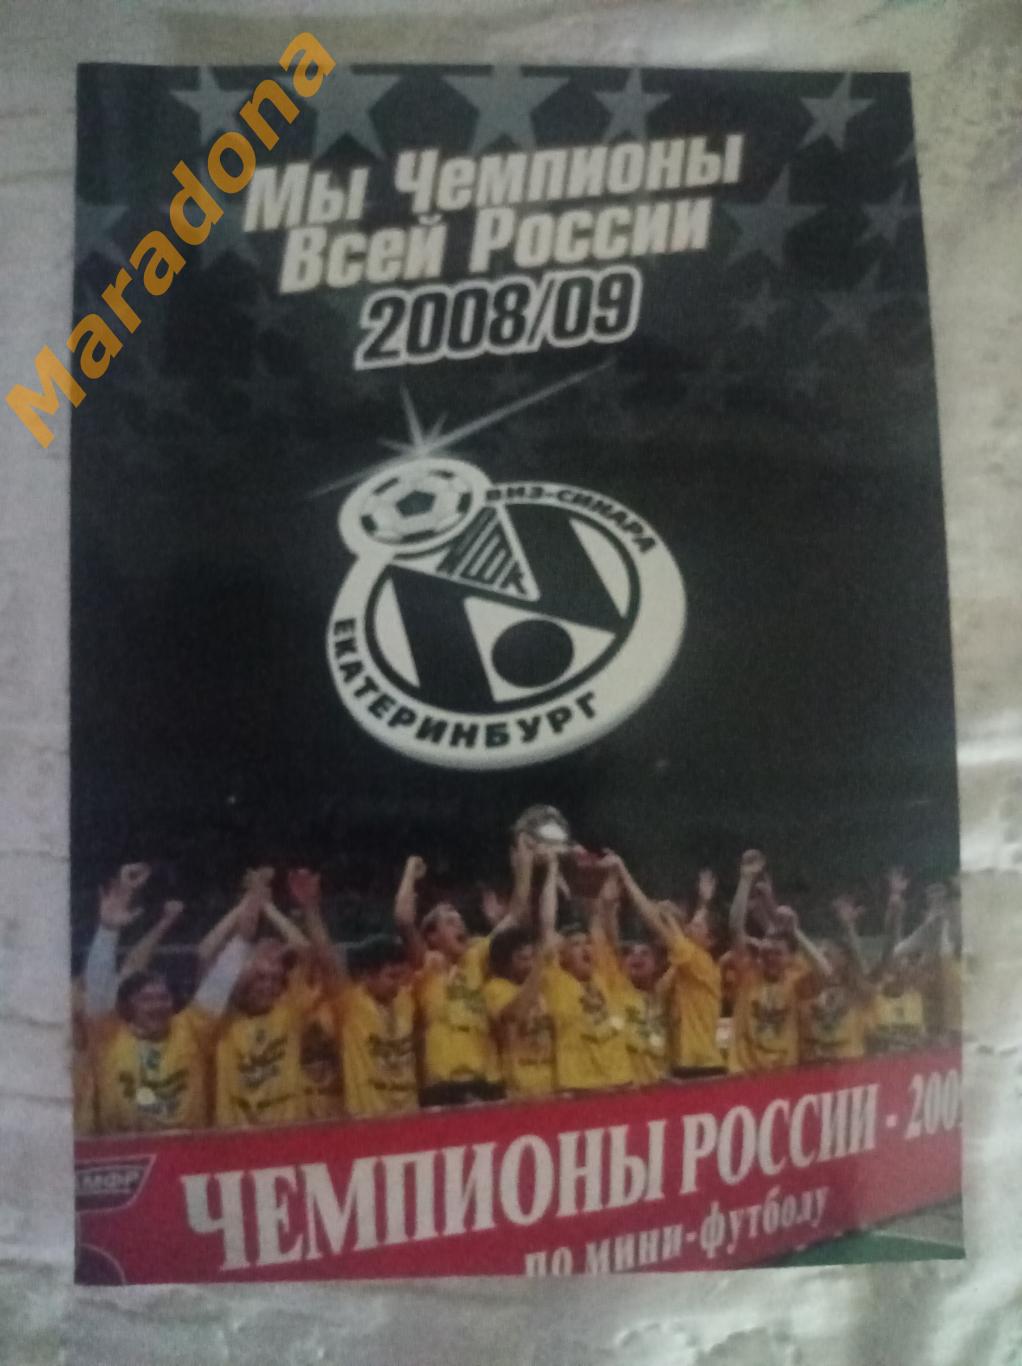 ВИЗ-Синара Екатеринбург 2008/2009 Мы чемпионы всей России